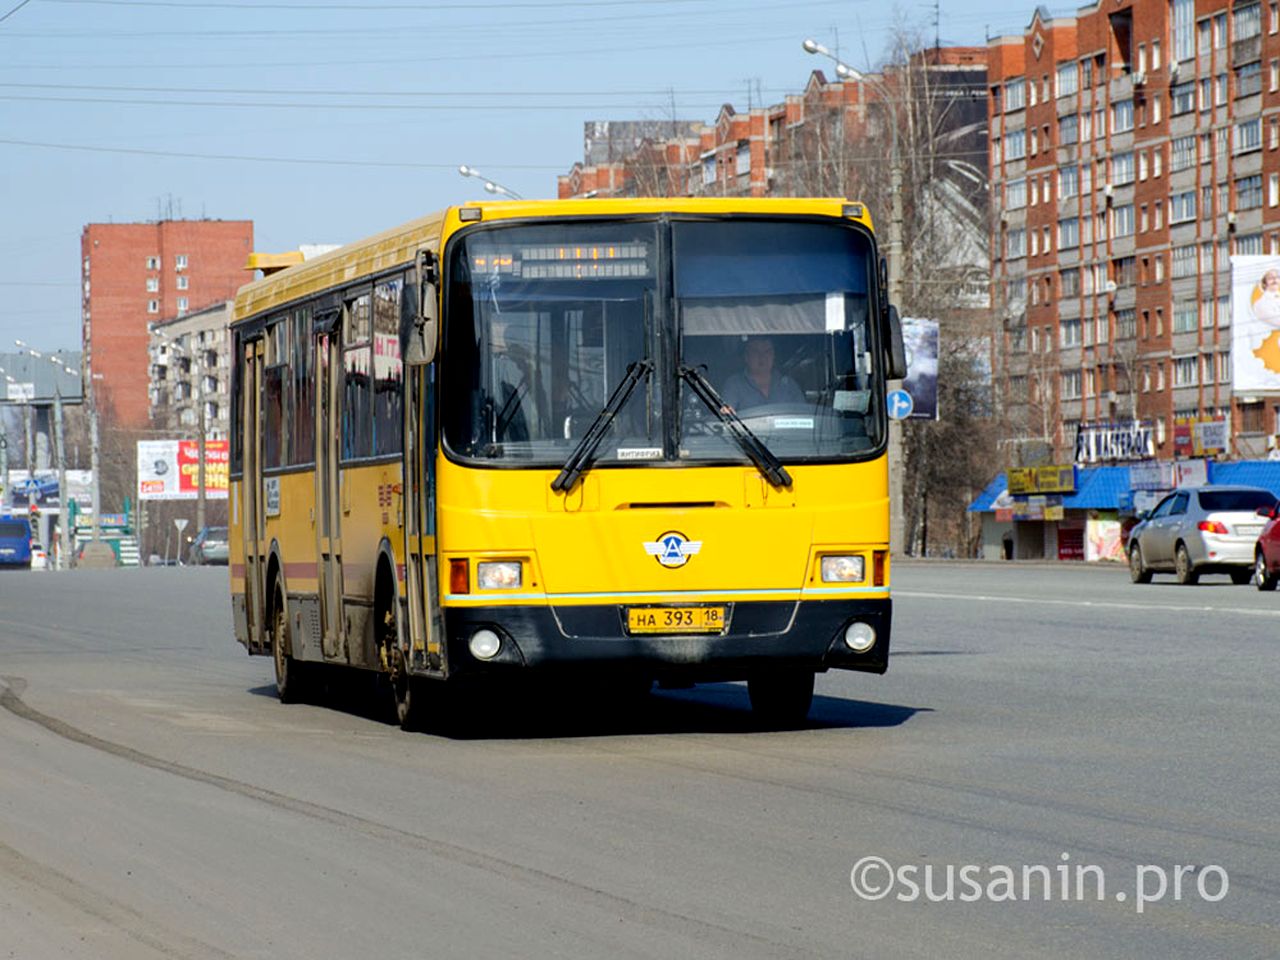 

Автобусный маршрут № 21 в Ижевске могут продлить к посёлкам Юровские дачи и Трудовая пчела

